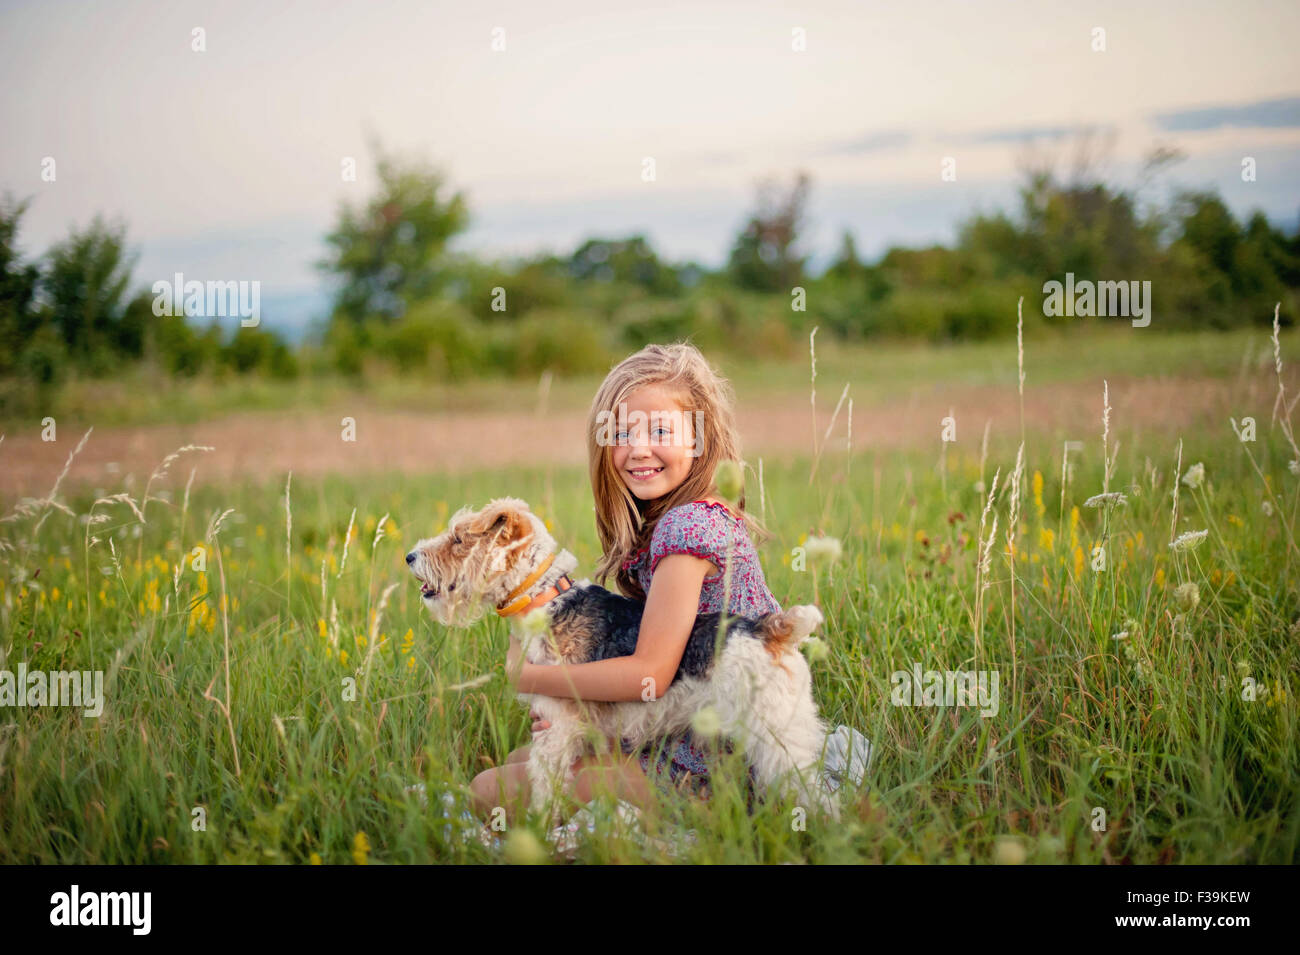 Retrato de una sonriente joven sentada en el campo abrazando a su perro Fox Terrier Foto de stock